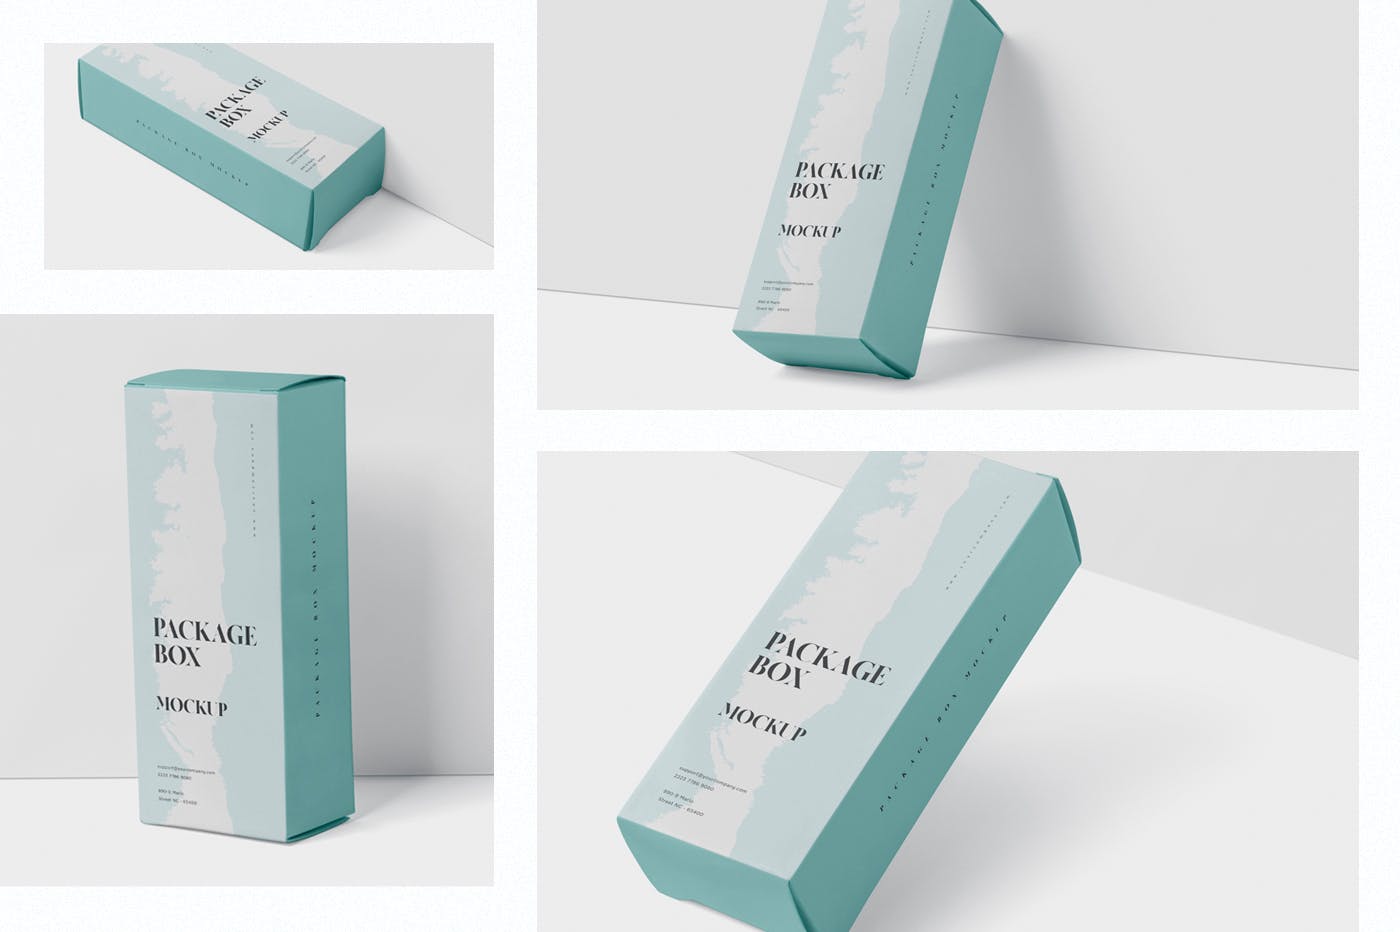 简约风多用途产品包装纸盒设计效果图第一素材精选 Package Box Mock-Up – High Rectangle Shape插图(1)